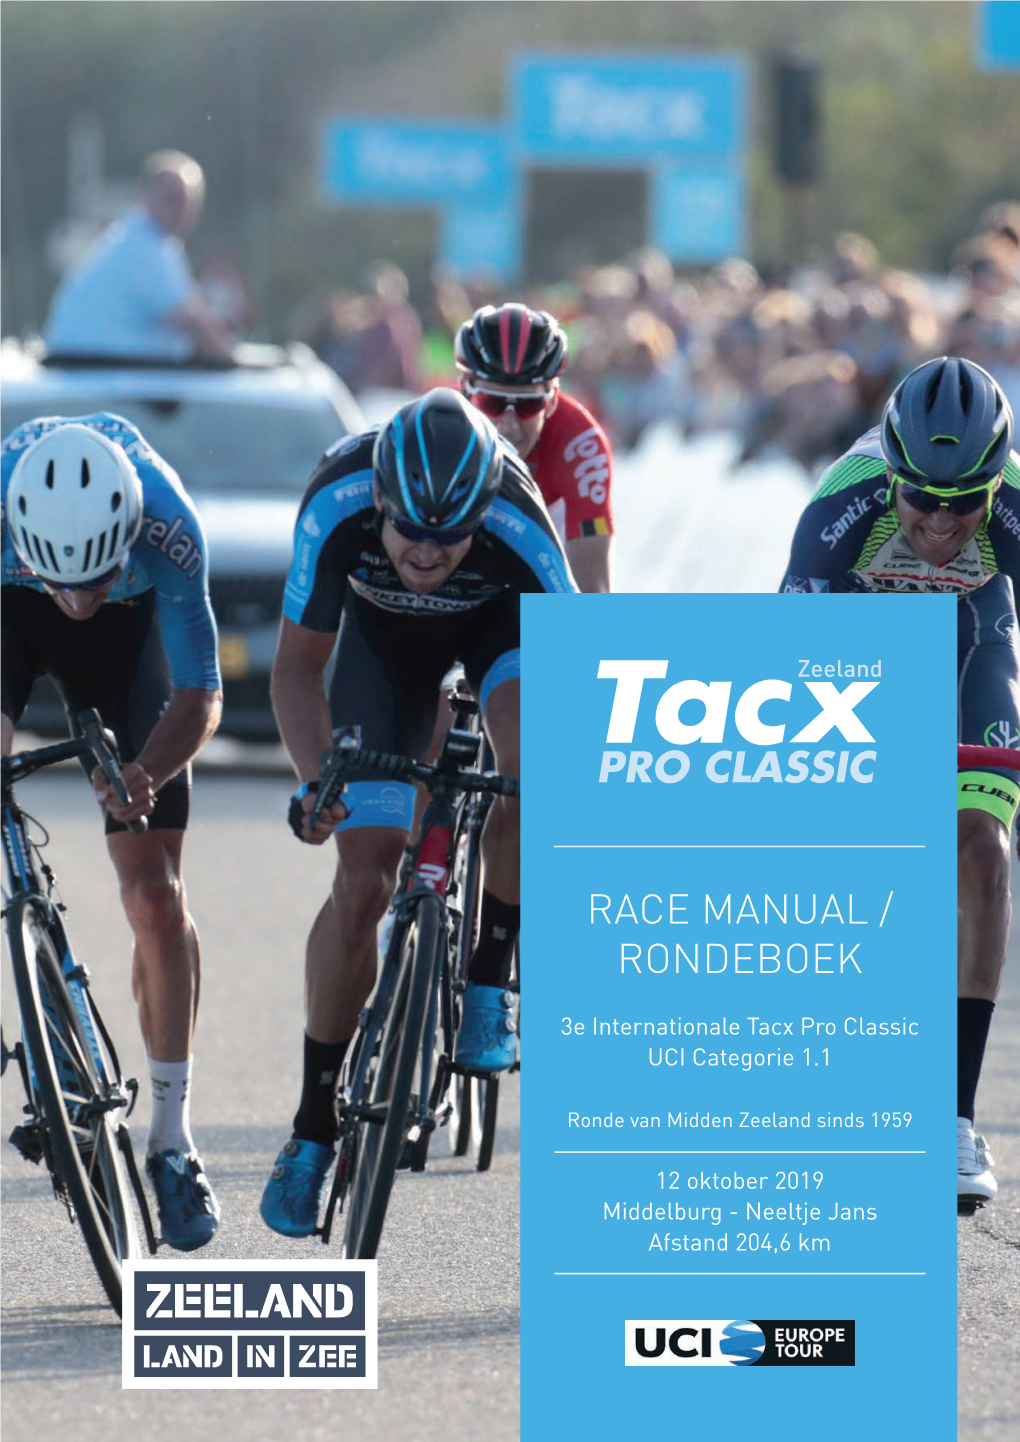 Race Manual / Rondeboek